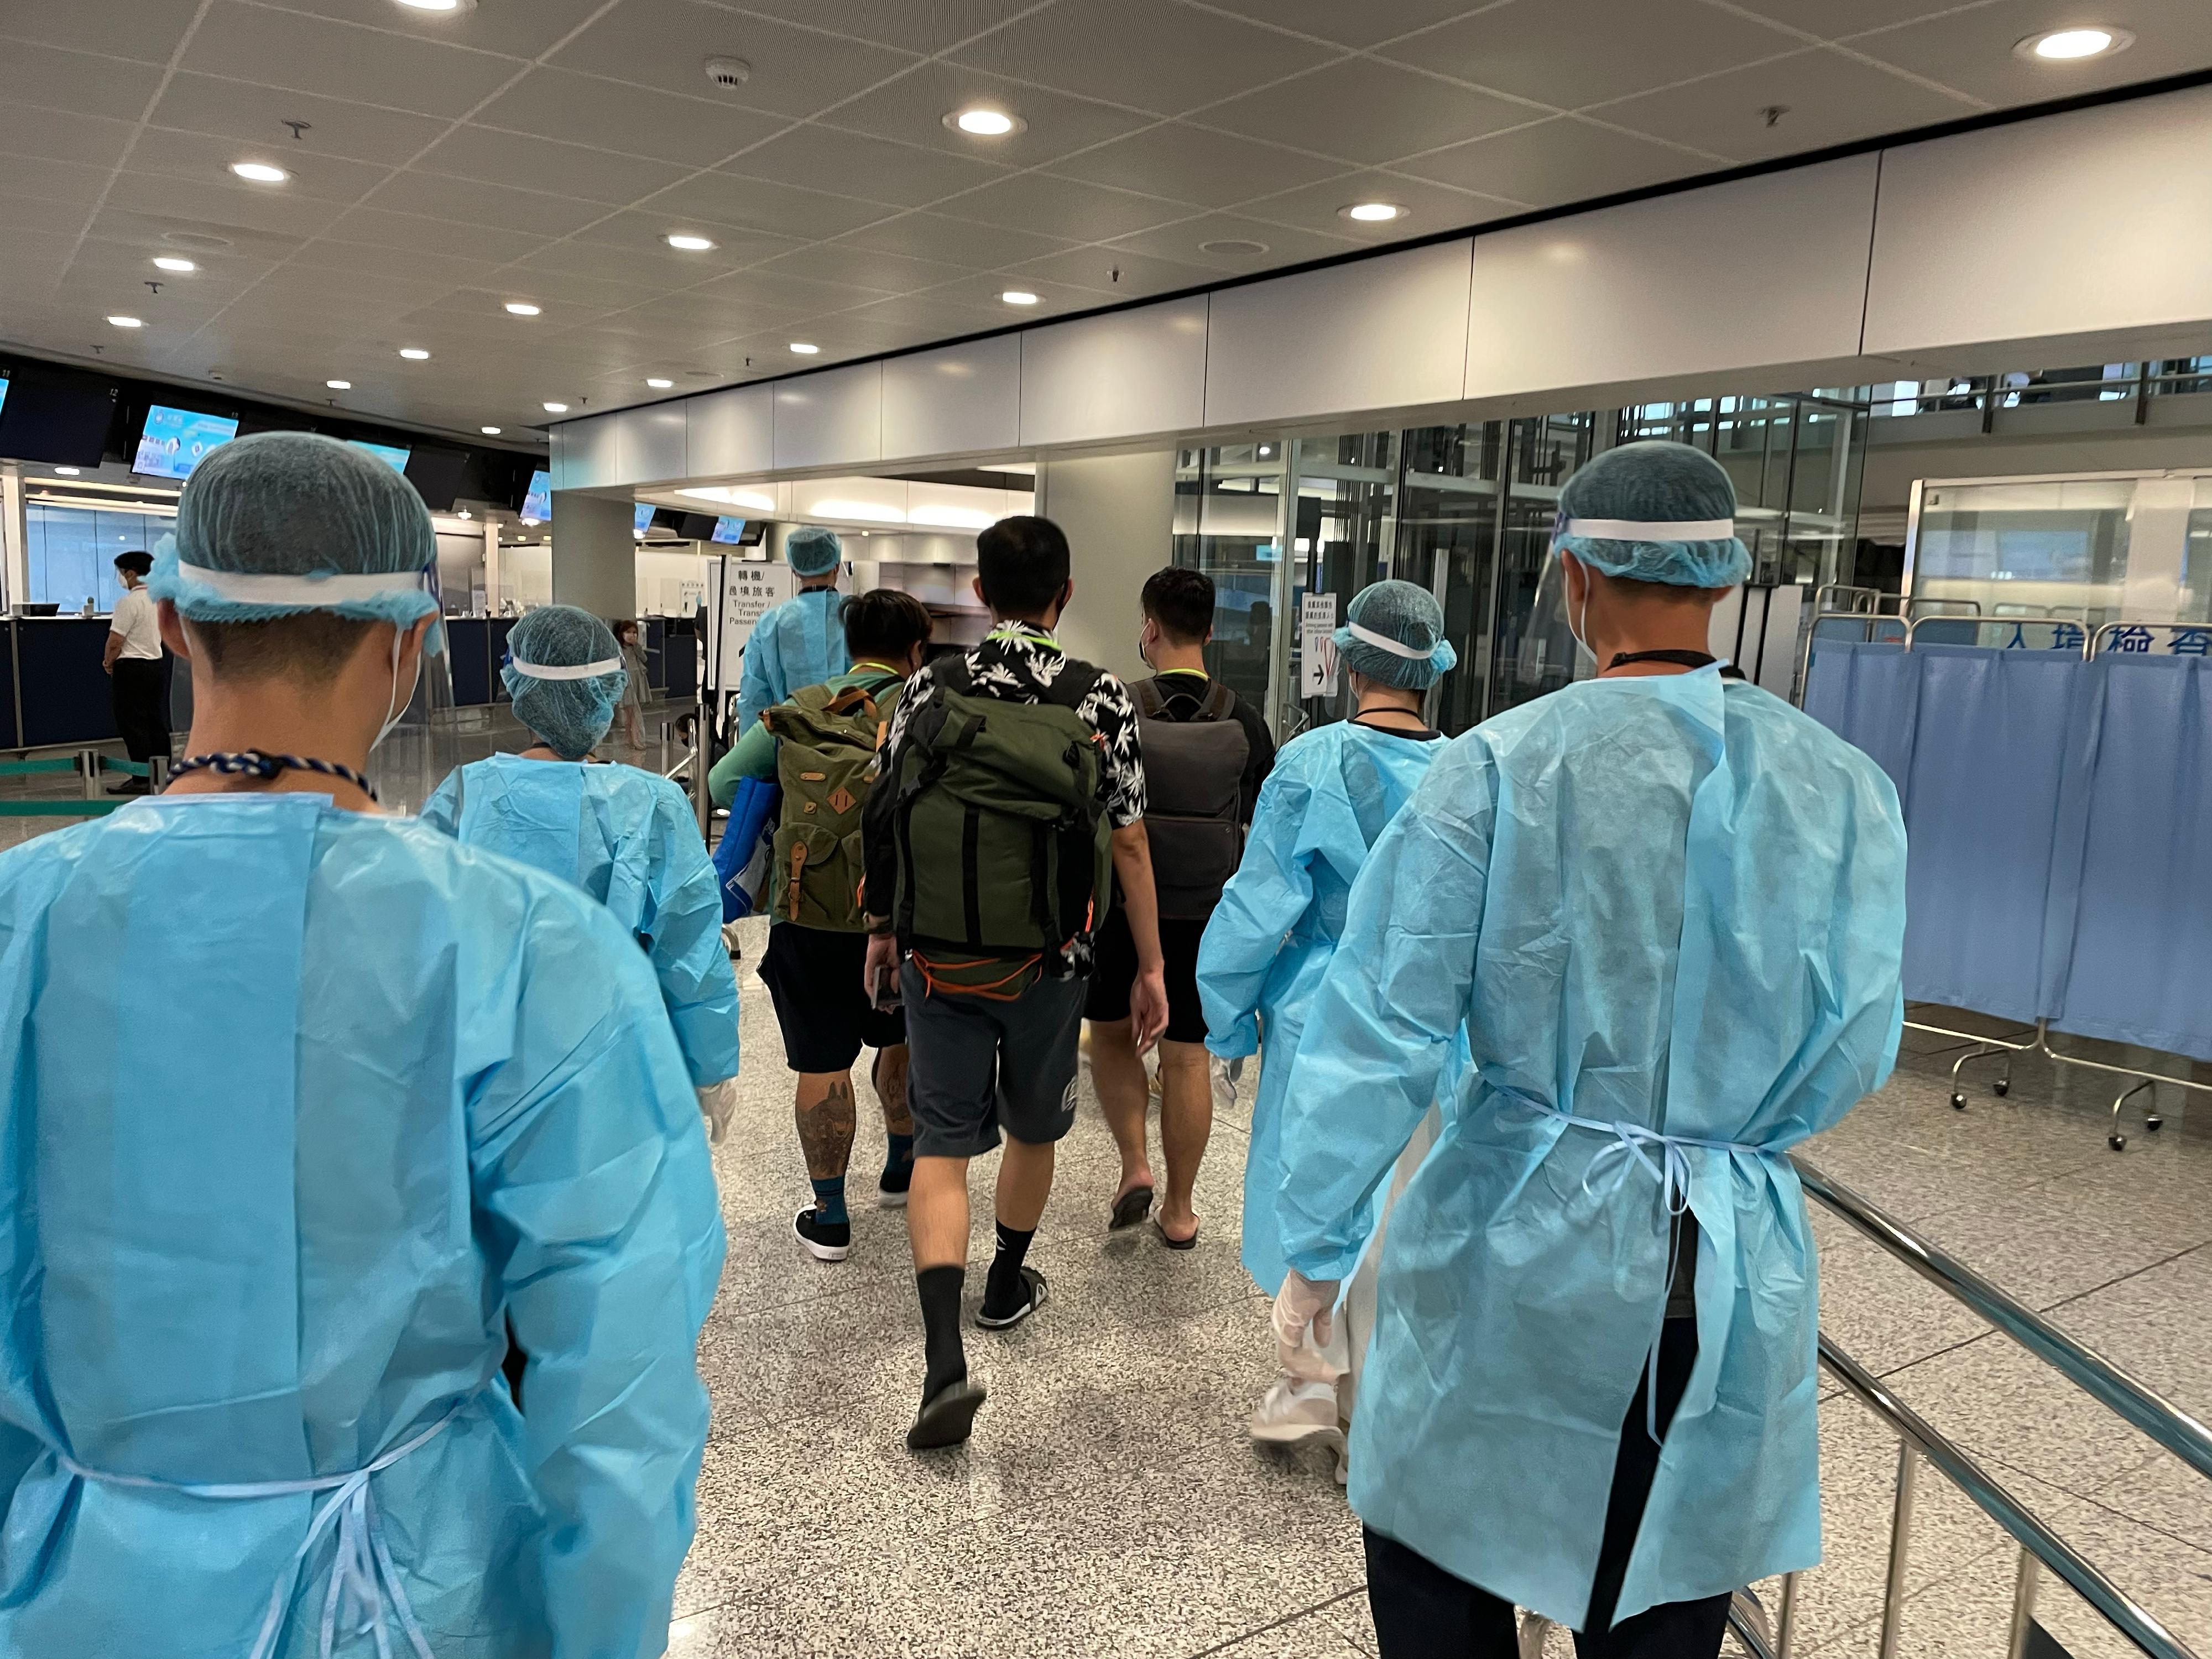 今日（八月二十六日）再有求助港人安全抵达香港国际机场。图示穿上防护装备的入境处人员，协助有关求助港人前往专用入境柜台办理出入境手续。